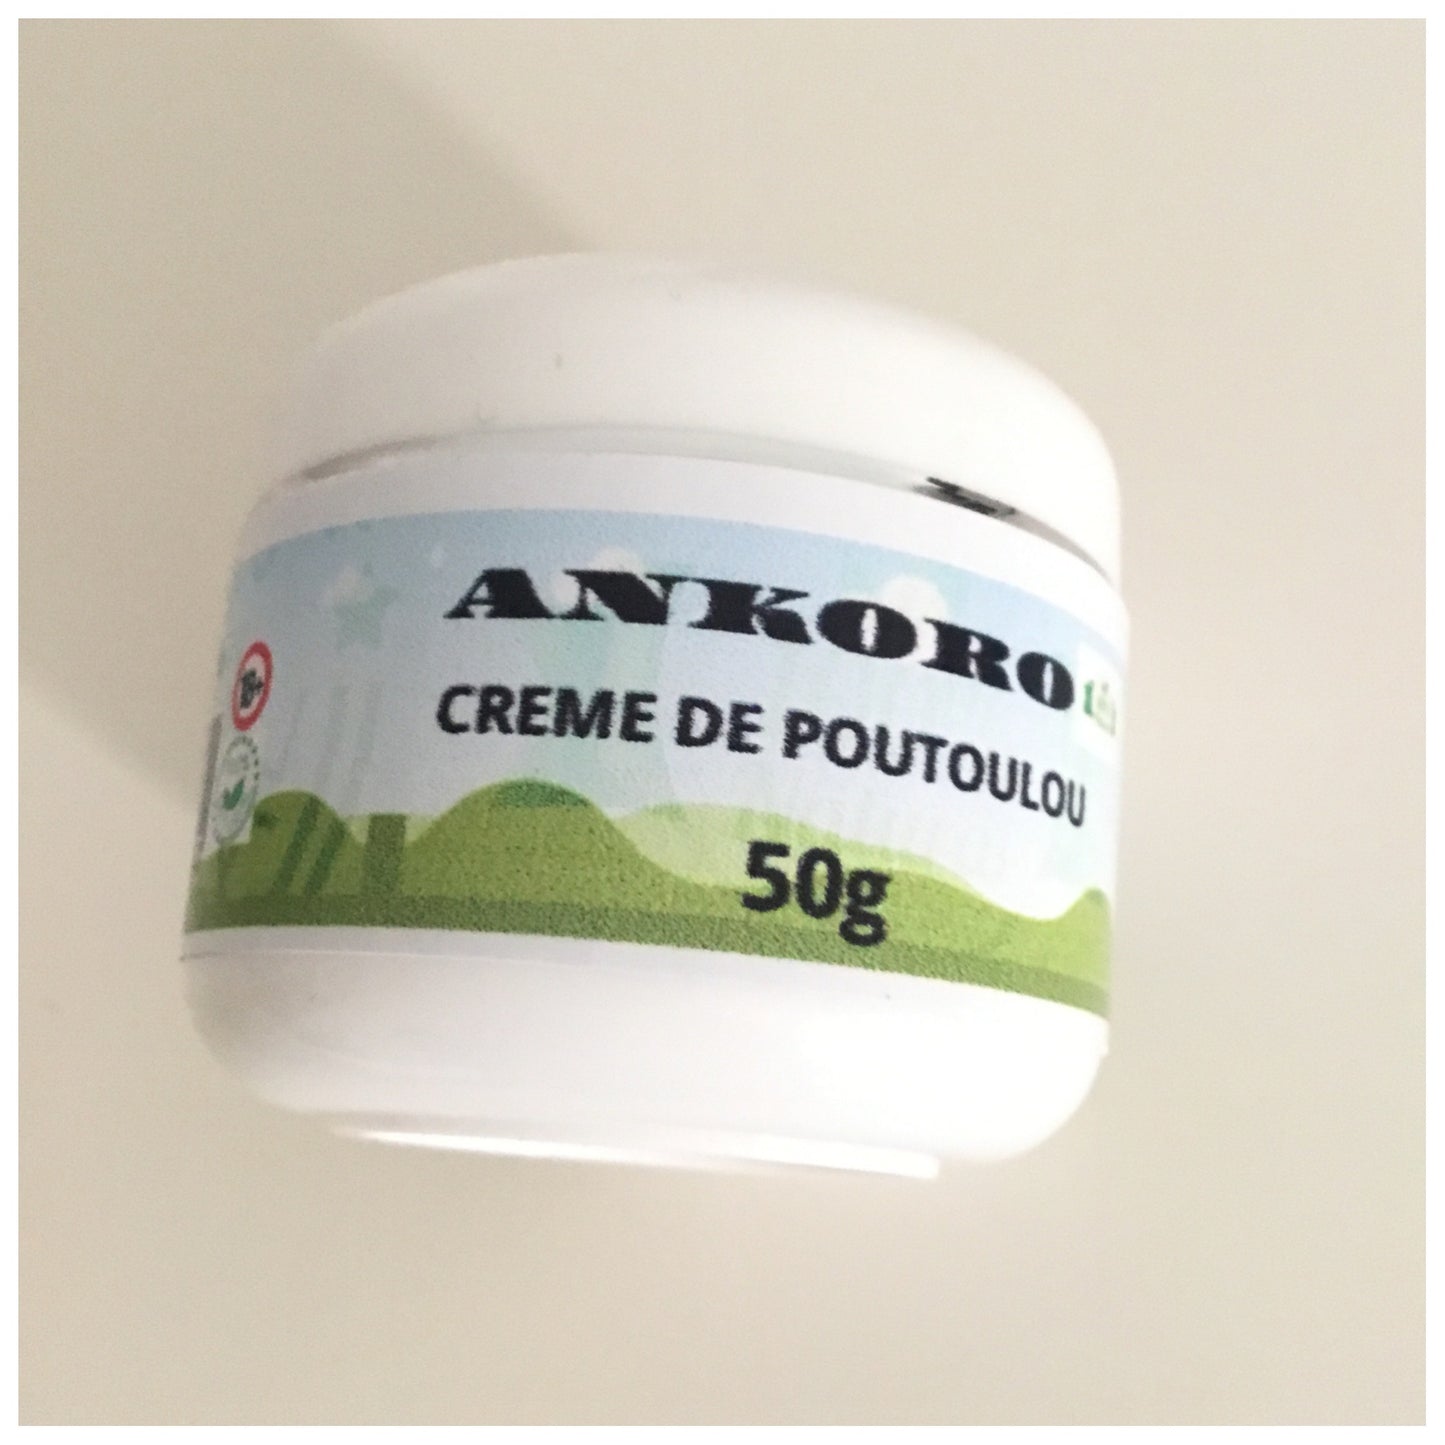 Poutoulou Ankora Crème